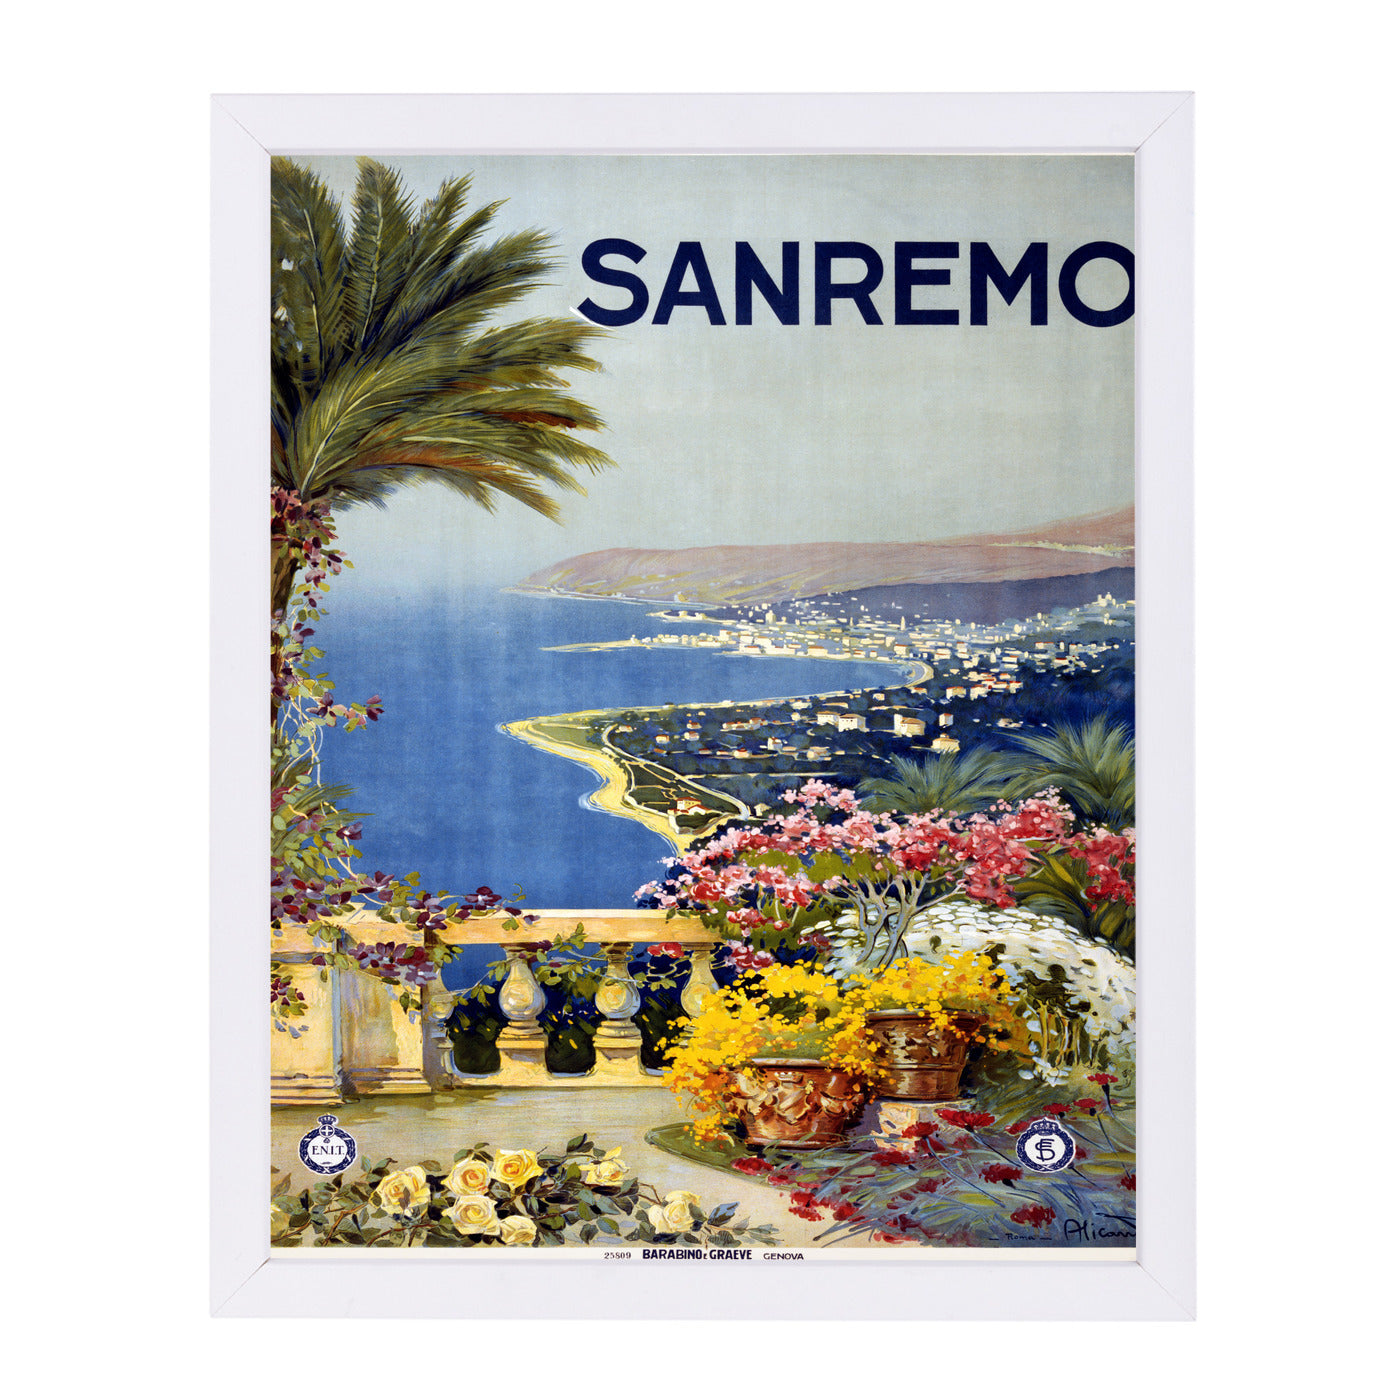 Vintage San Remo Travel Poster by Samantha Ranlet Framed Print - Americanflat